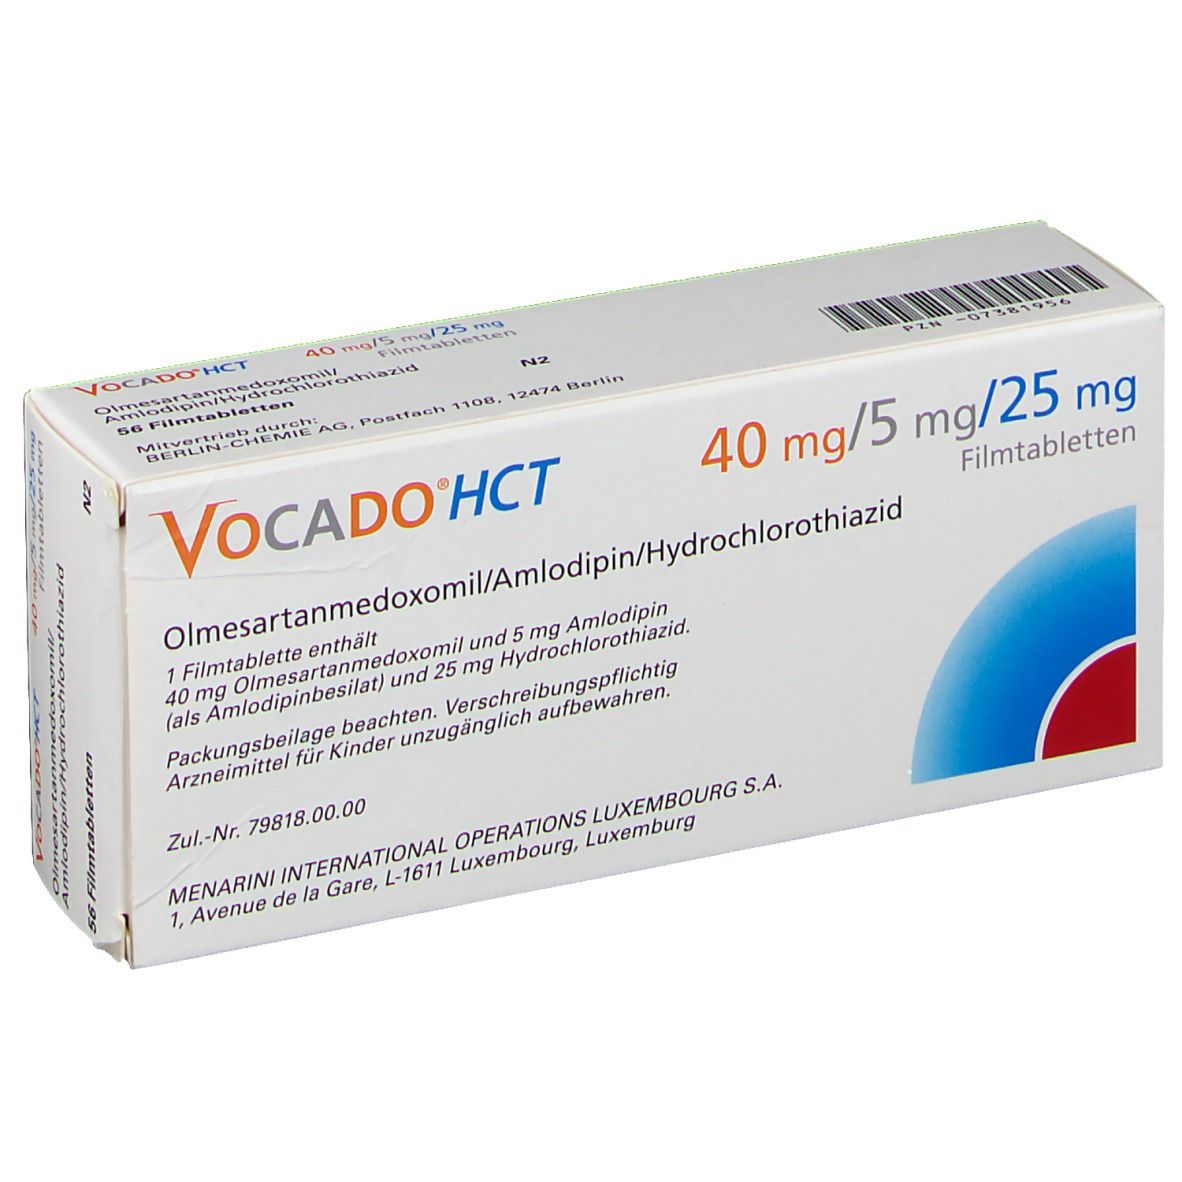 Vocado®HCT 40 mg/5 mg/25 mg